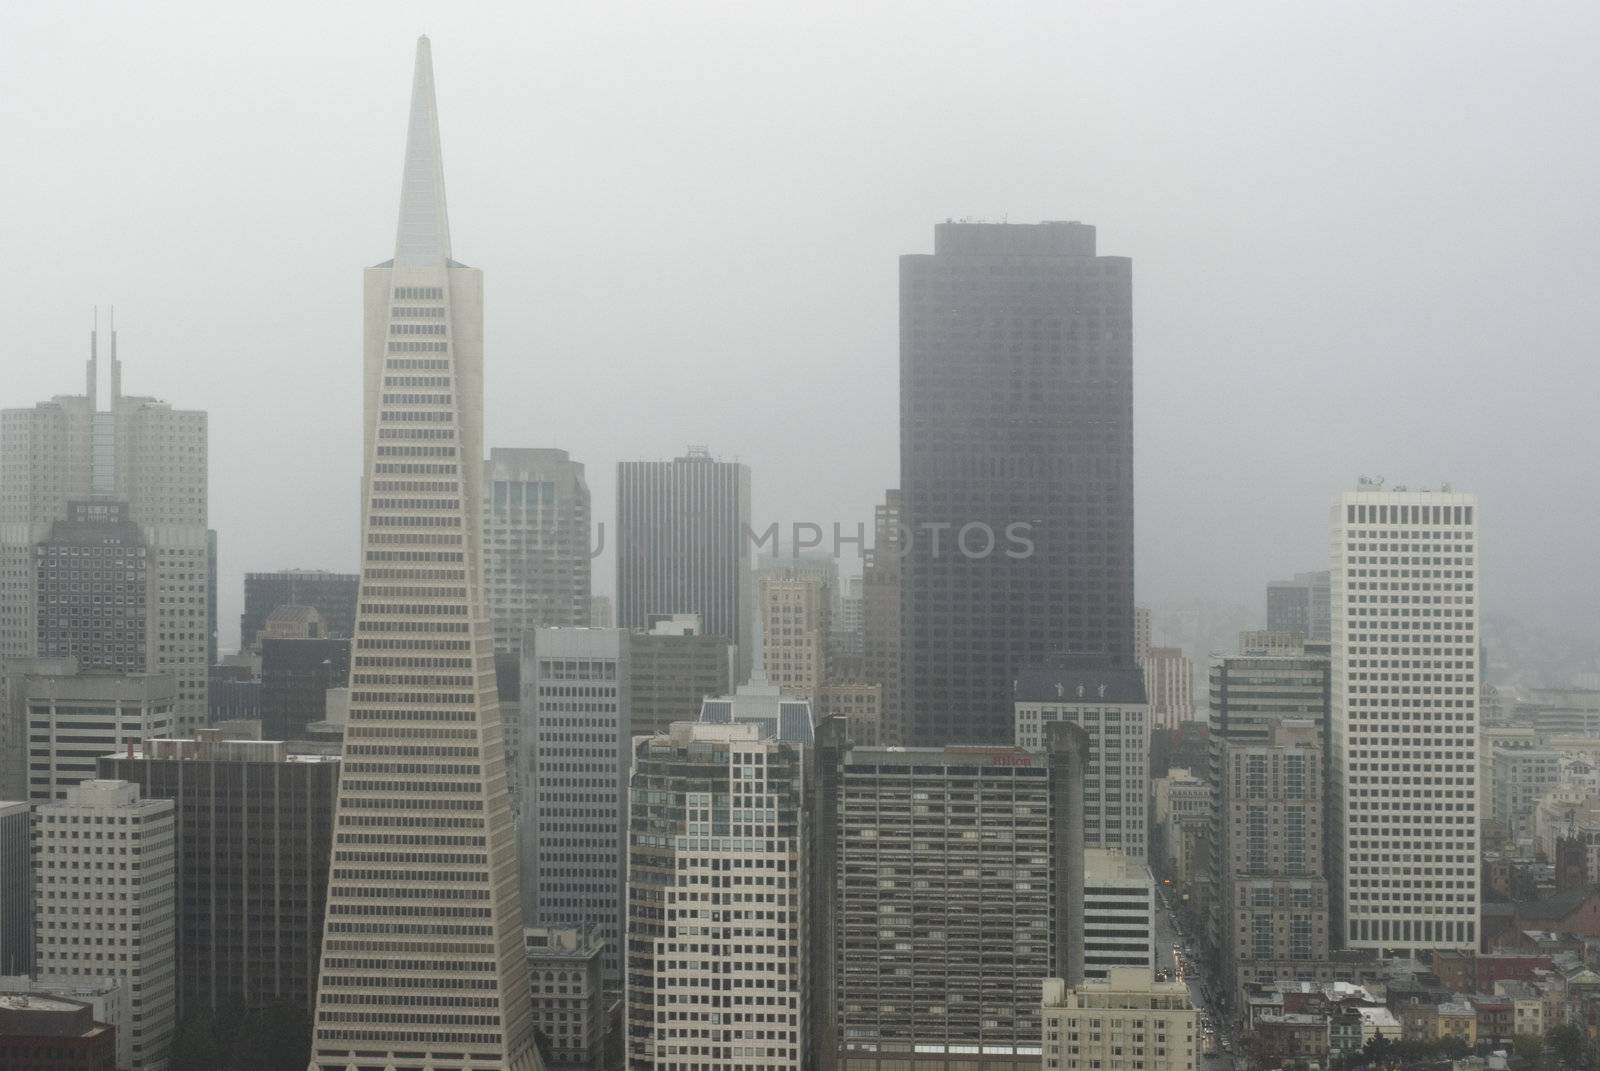 San Francisco Fog by stockarch